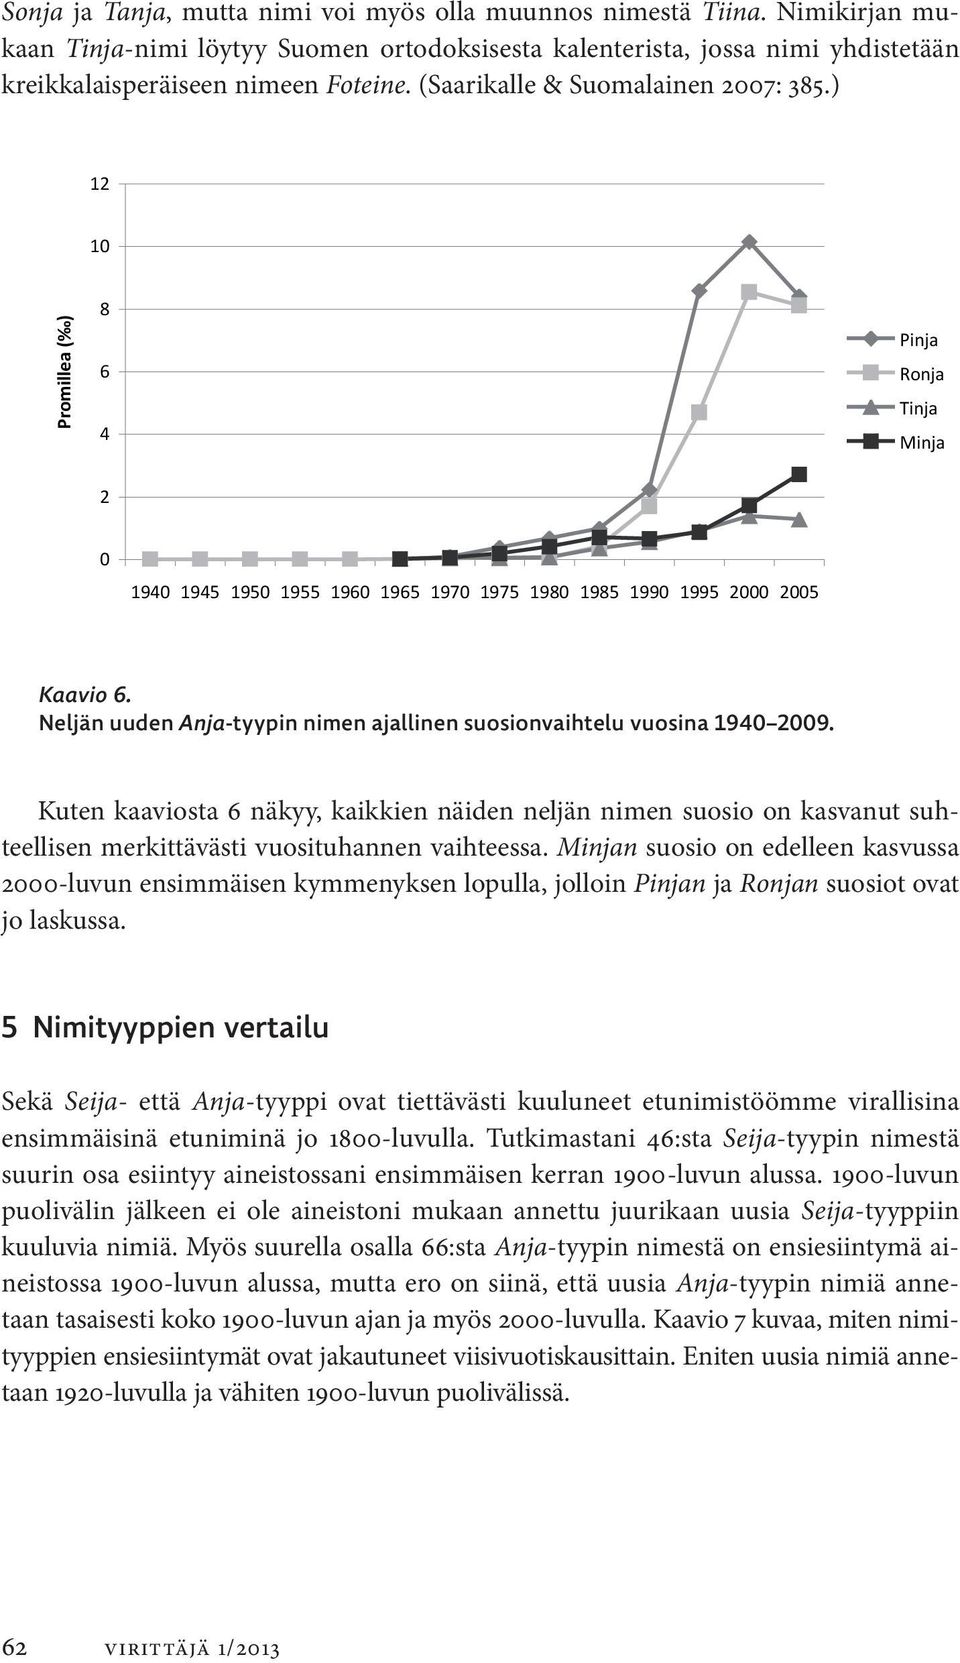 0,052763314 0,03 Minja kreikkalais peräiseen nimeen Foteine. (Saarikalle & Suomalainen 2007: 385.